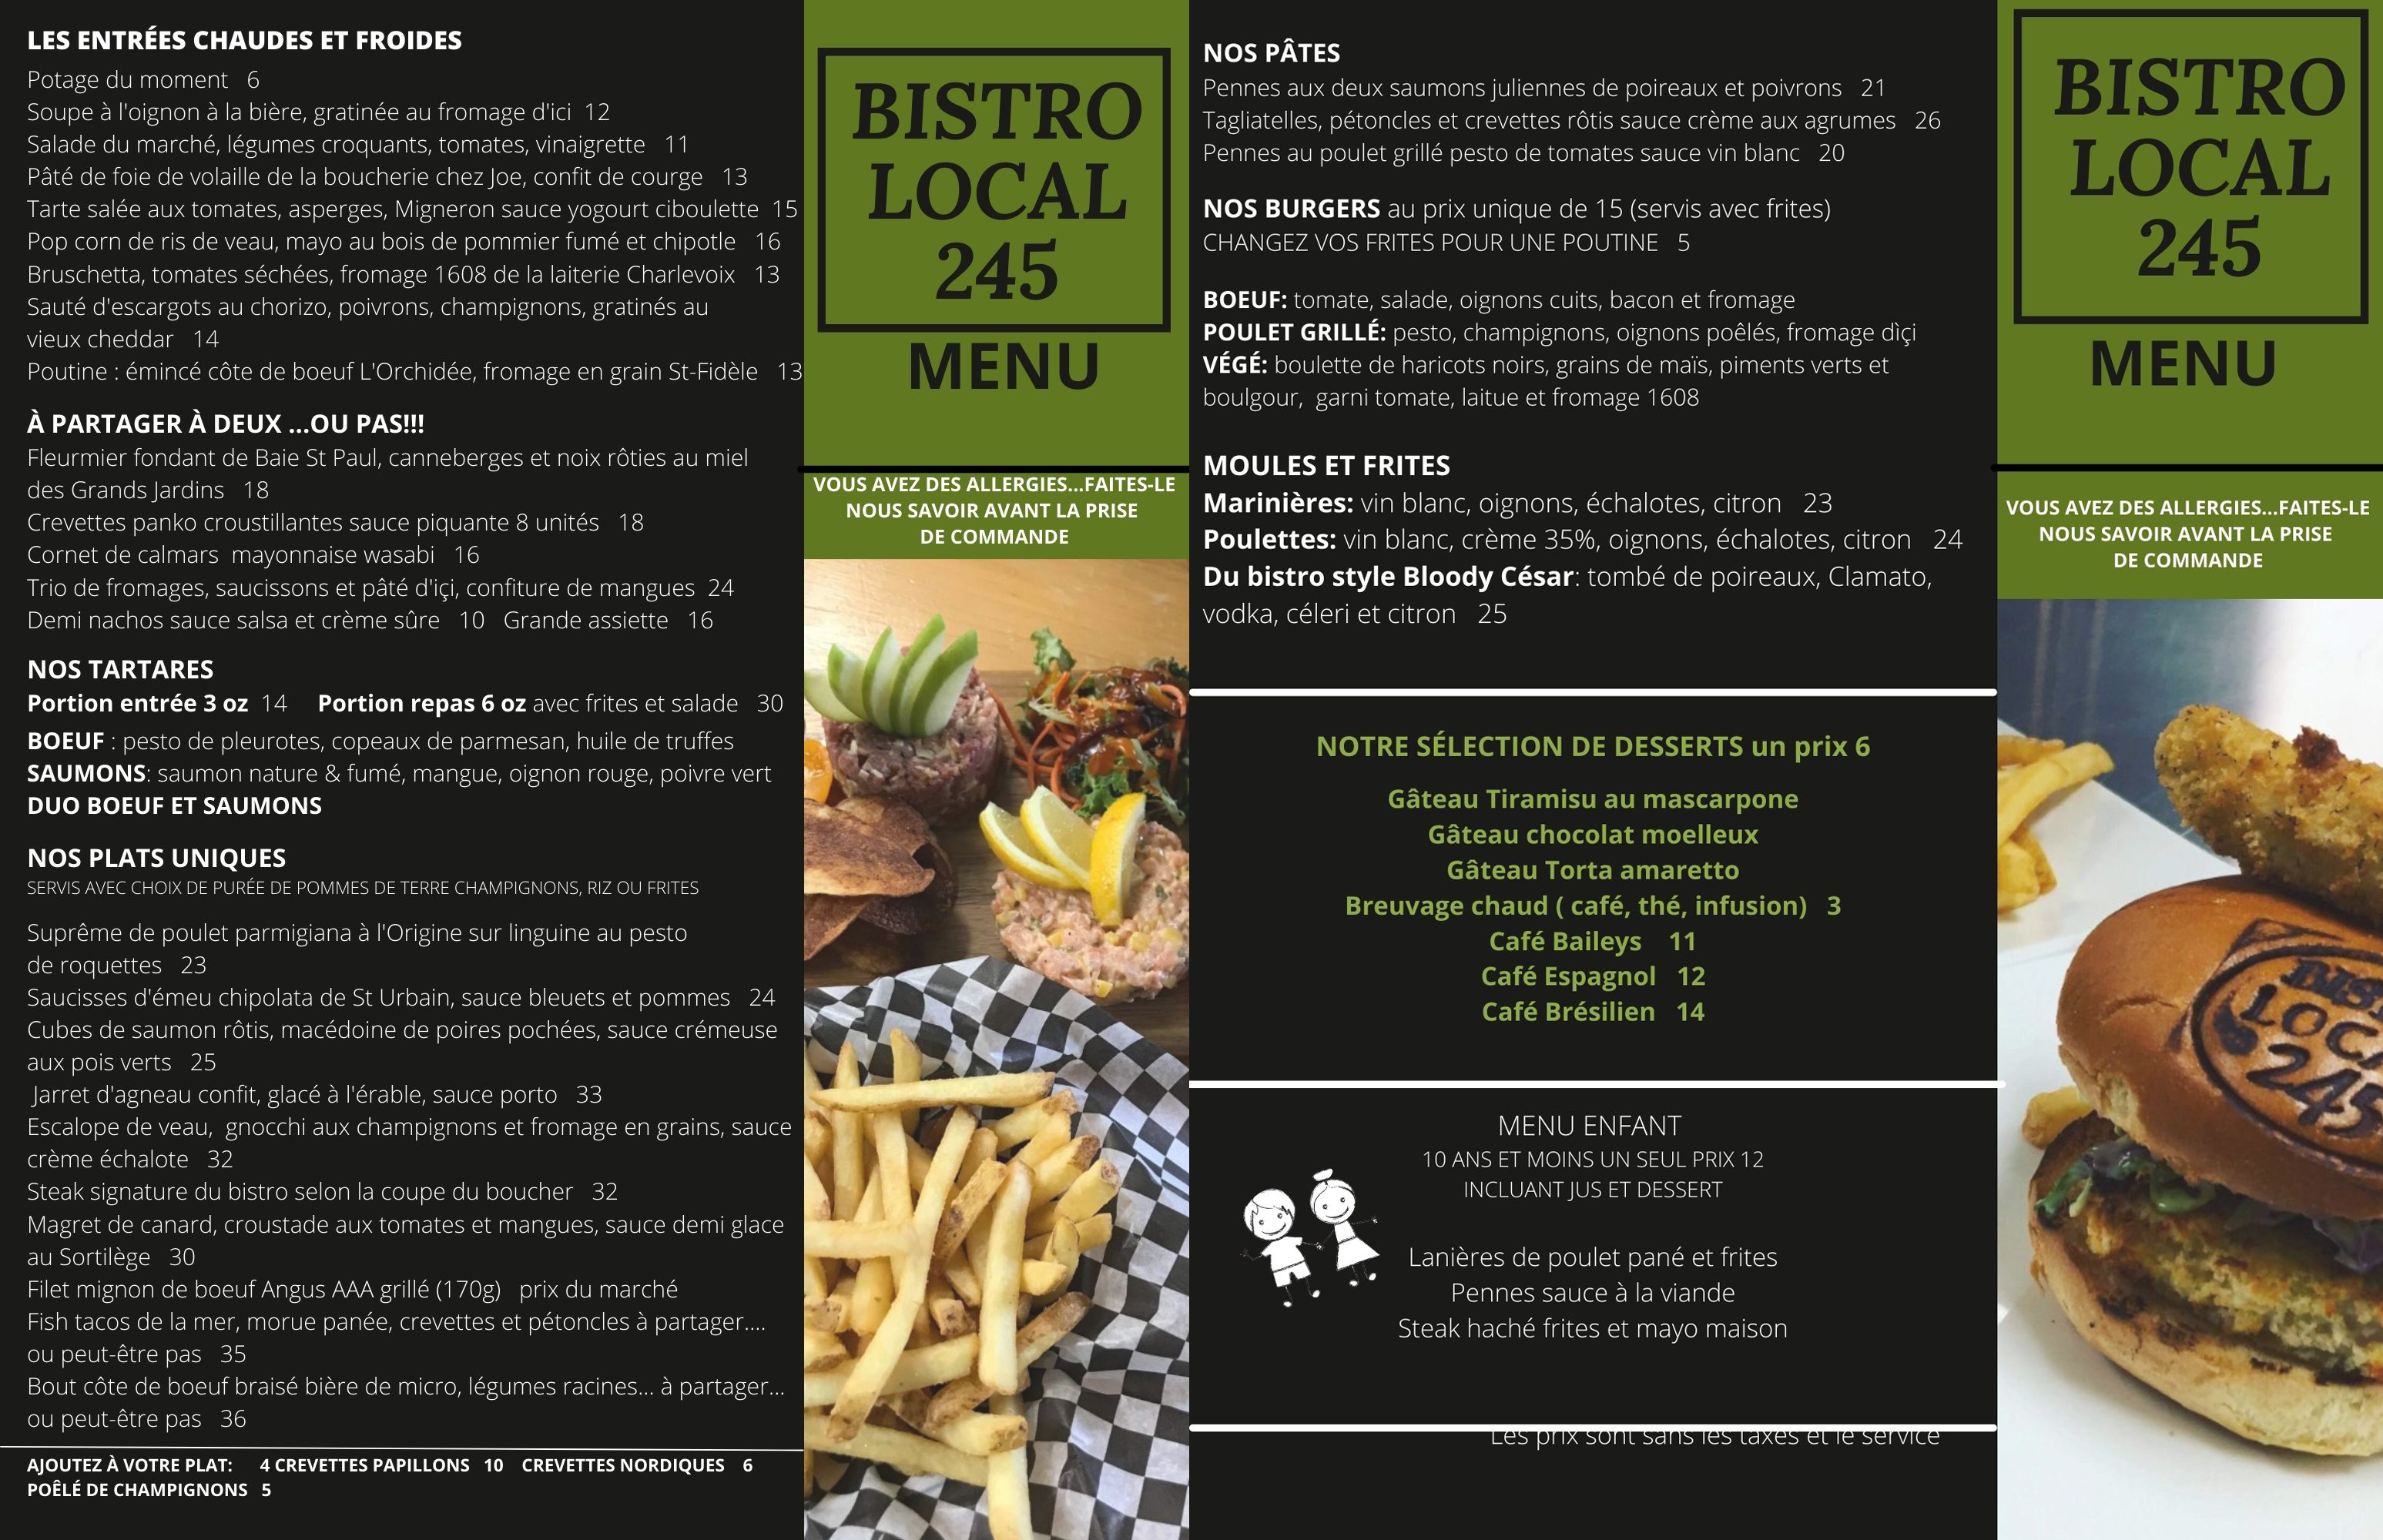 Le Bistro Local 245 et son succulent menu en décembre...